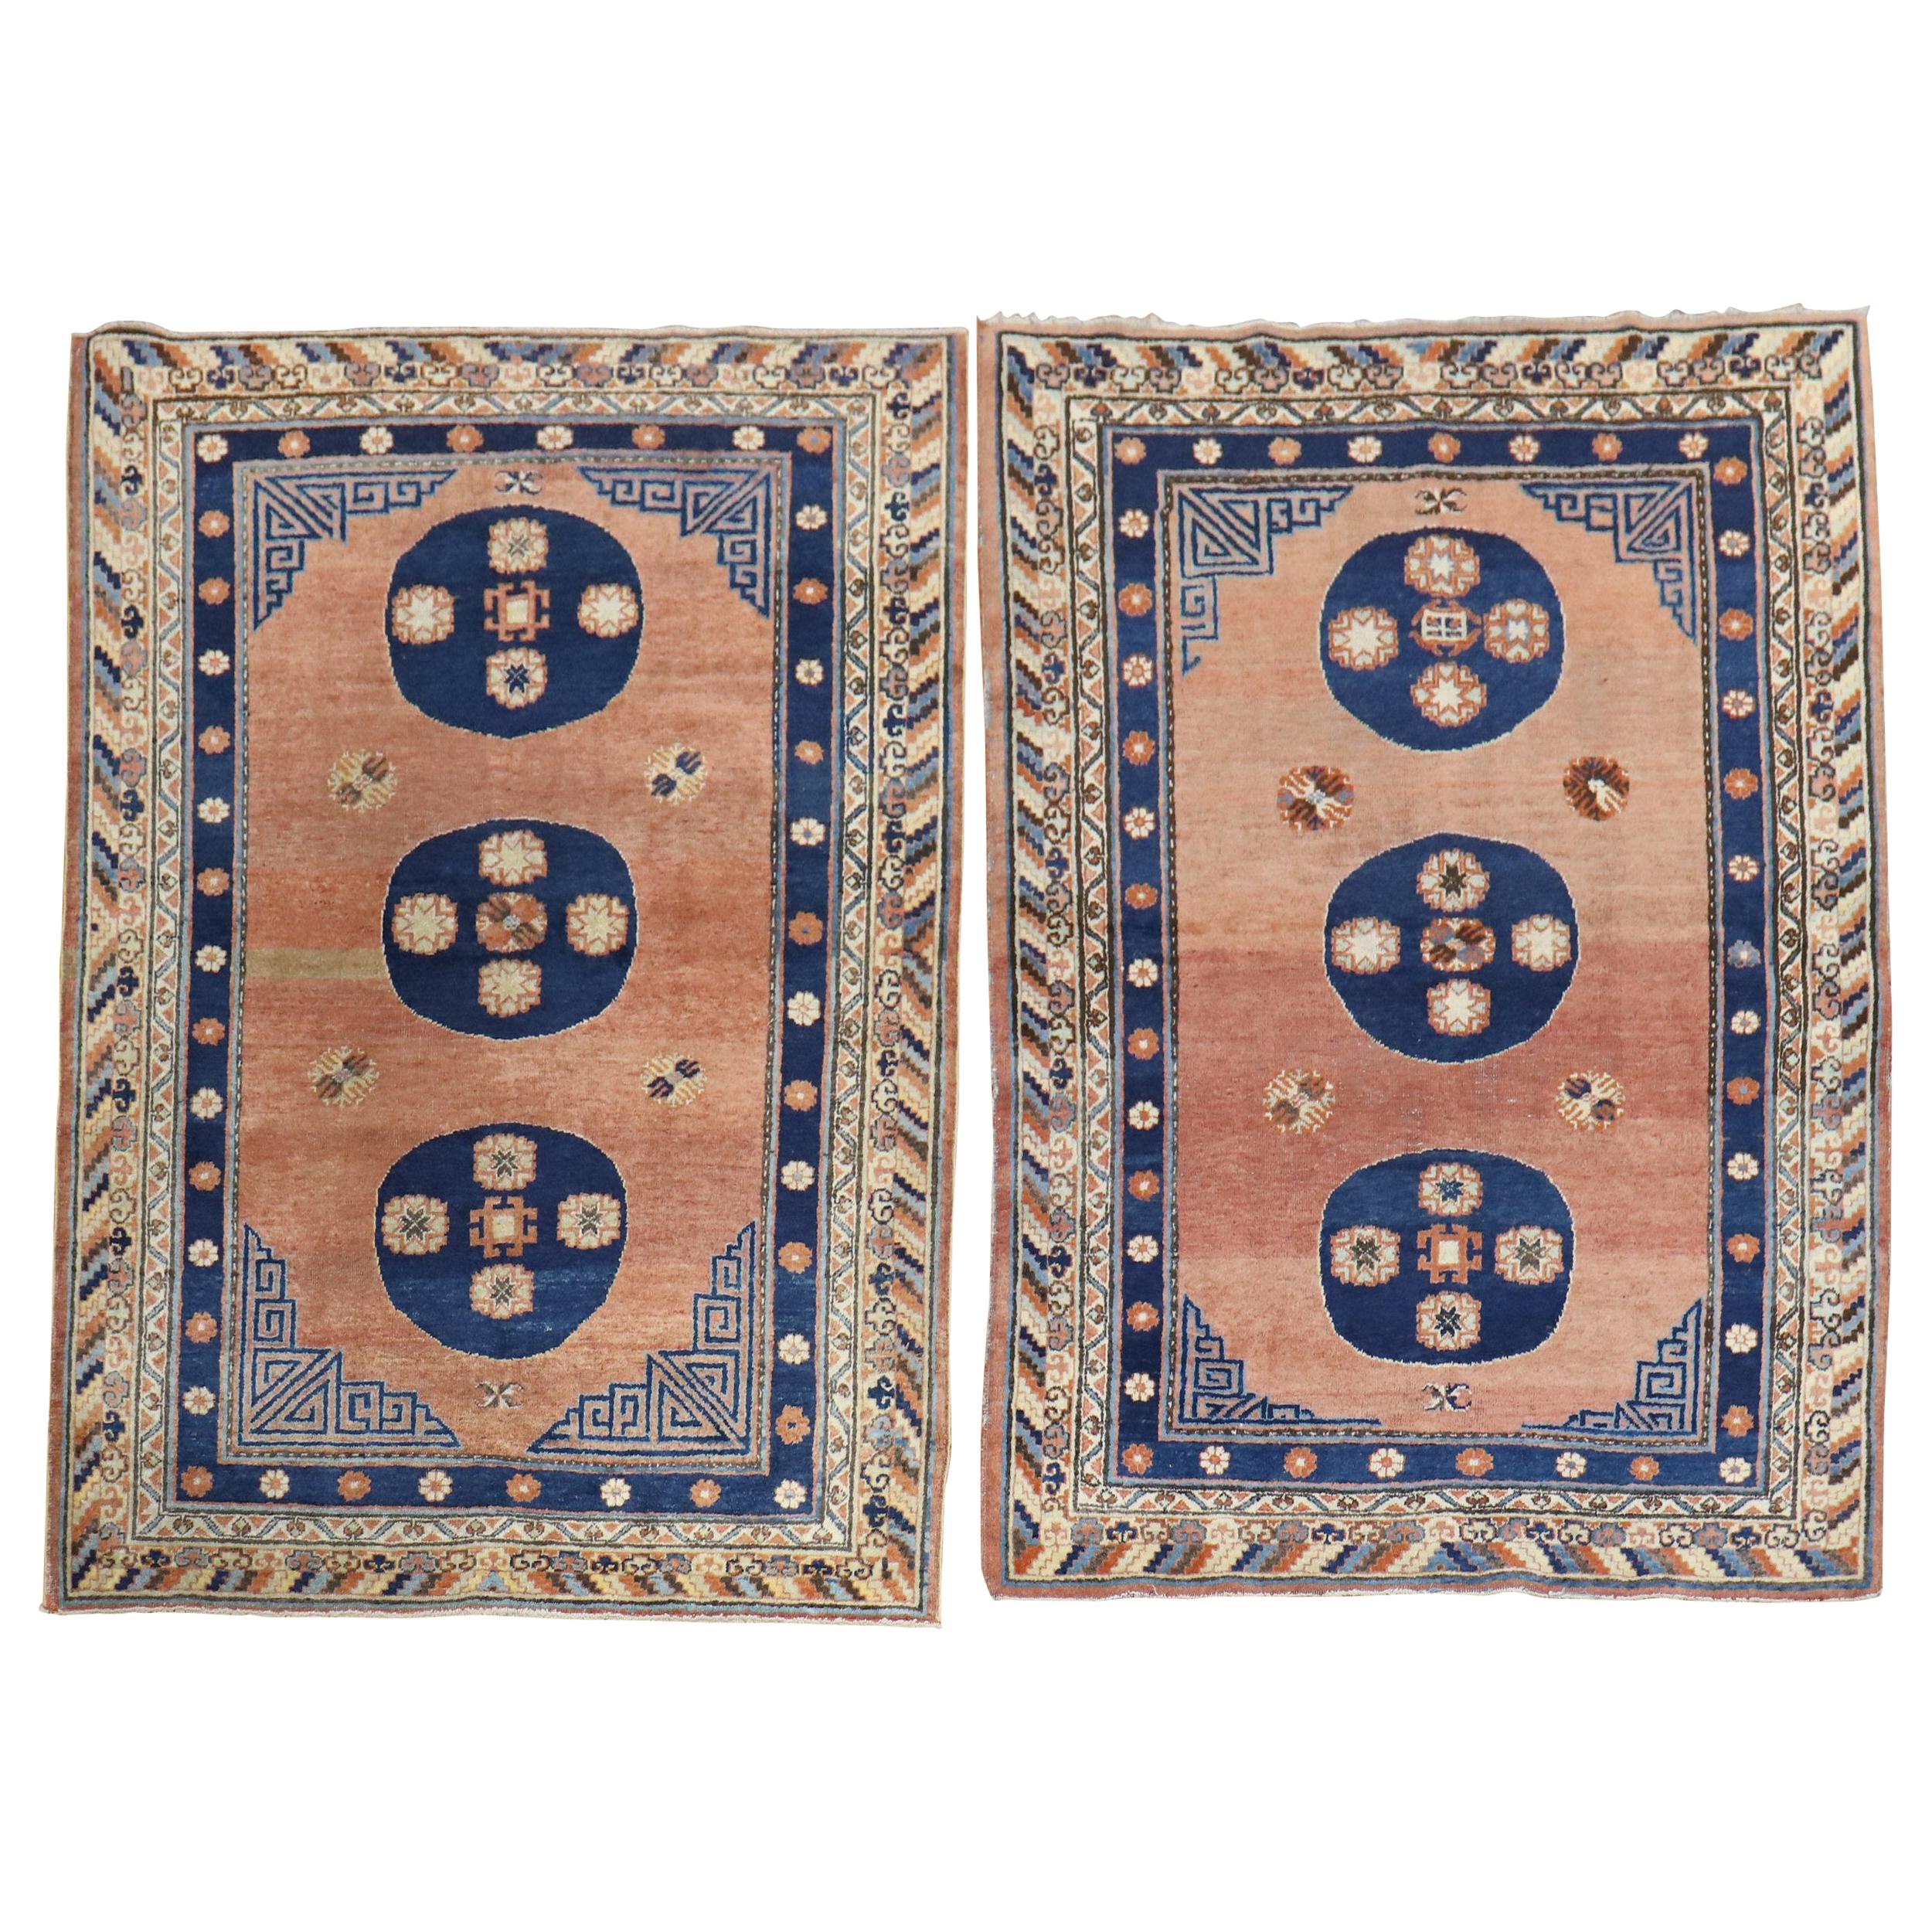 Seltenes, passendes Paar antiker Khotan-Teppiche